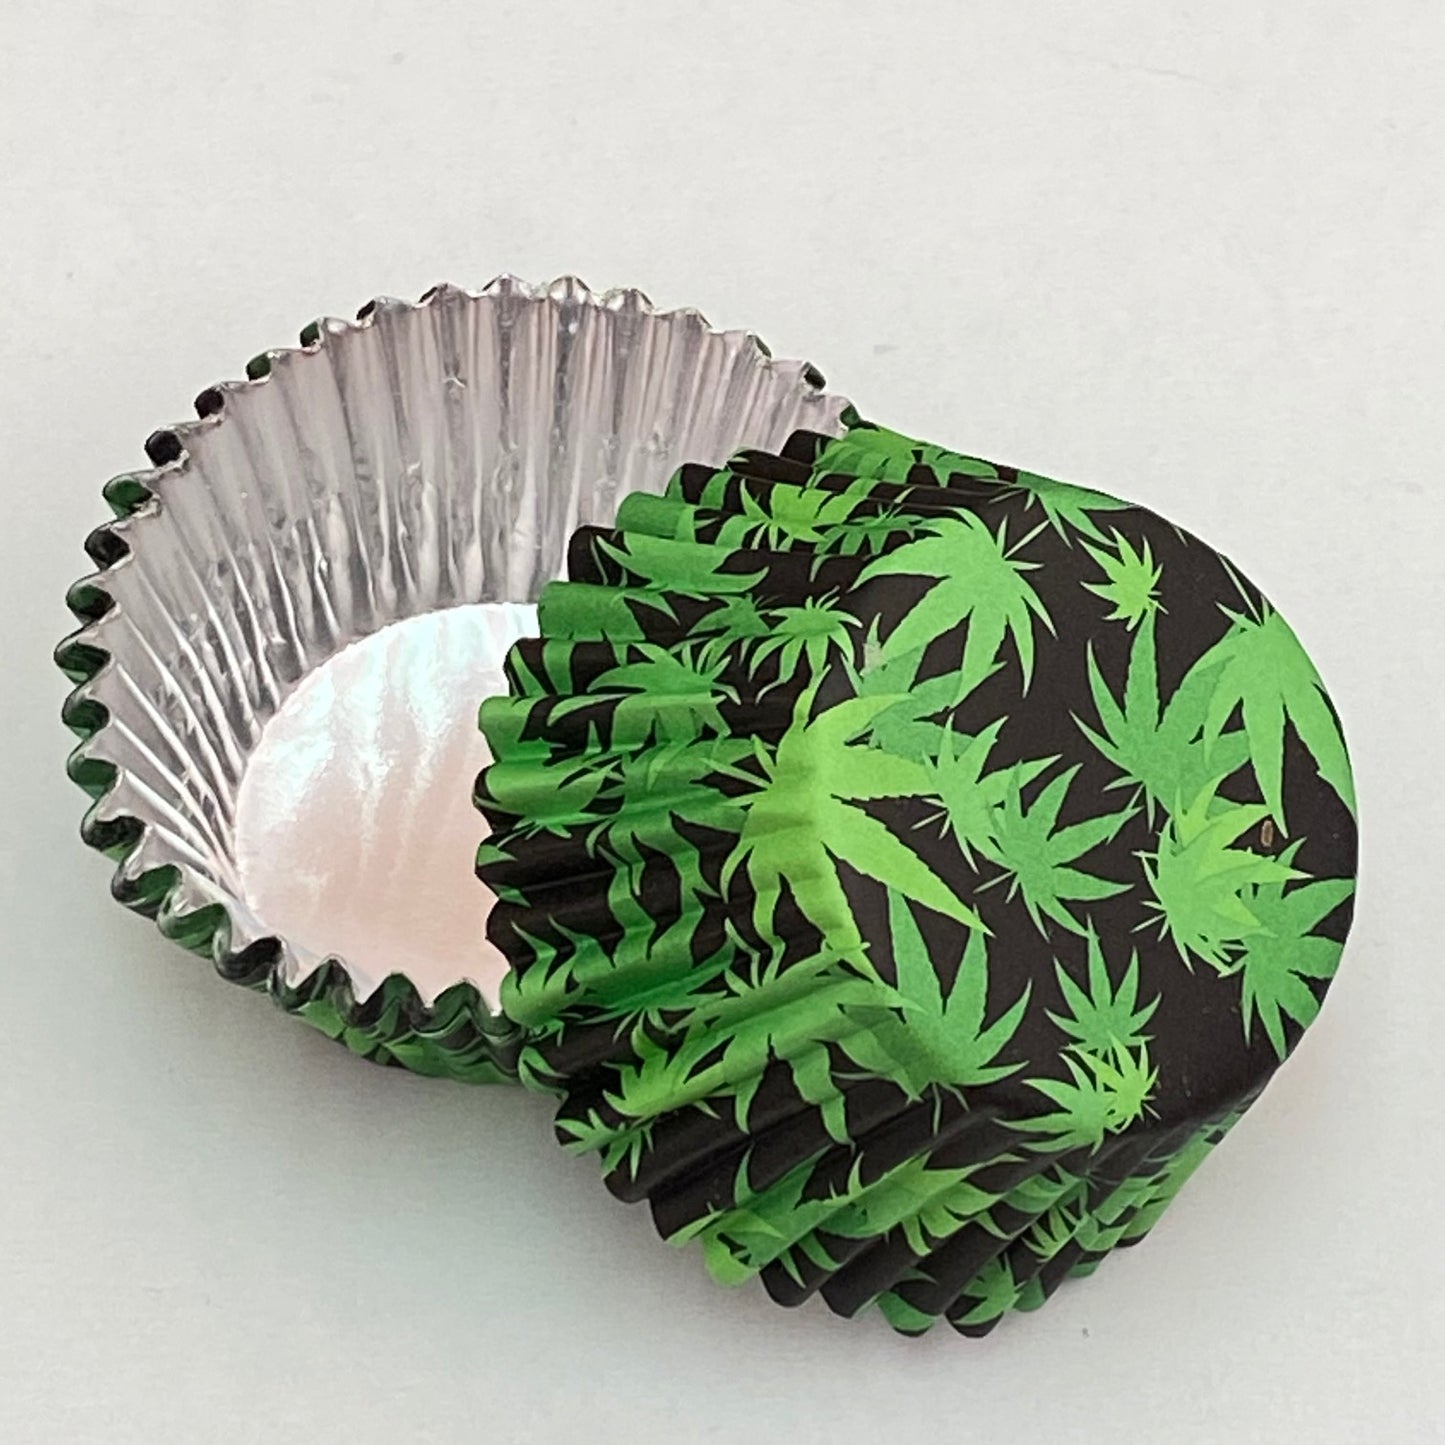 Pj Bold Green Foil Cupcake Liner with Leaf Design